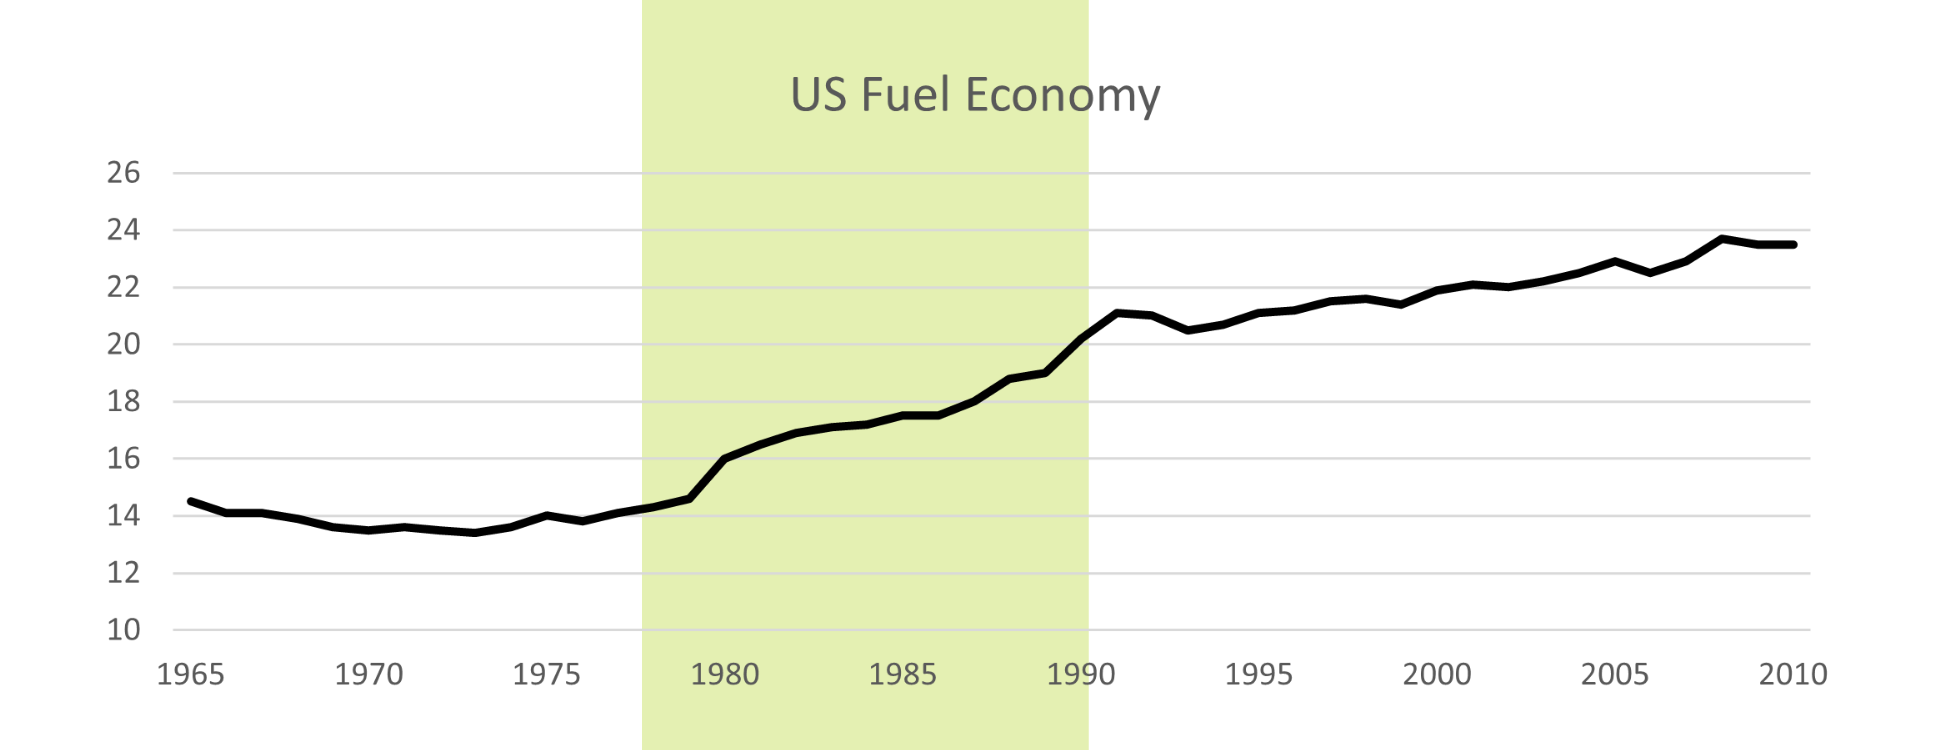 US Fuel Economy